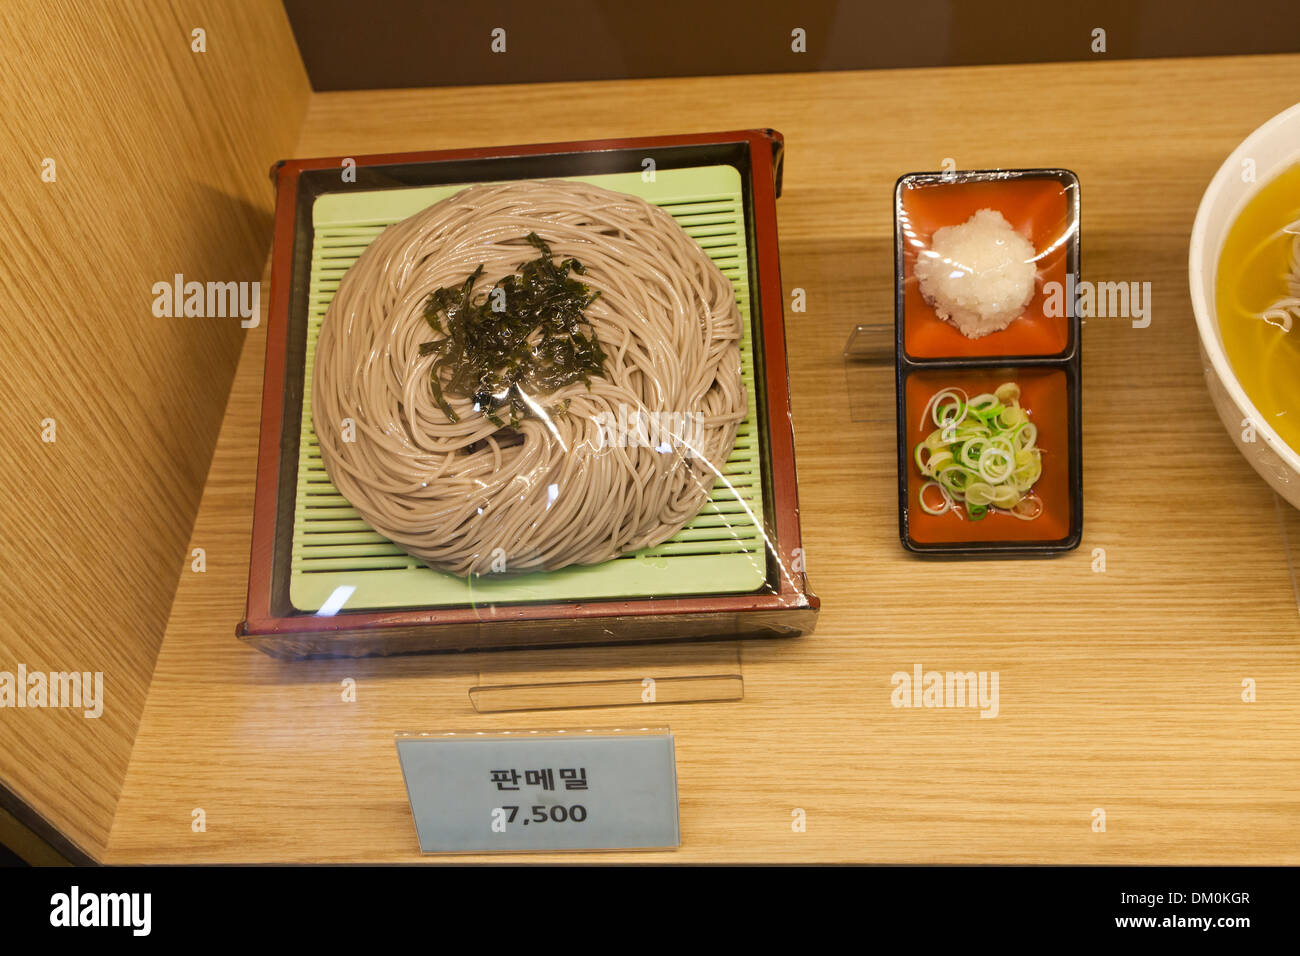 In Plastica Modello alimentare (Tagliatelle di grano saraceno) visualizzare il caso in un ristorante fast food - Seoul, Corea del Sud Foto Stock